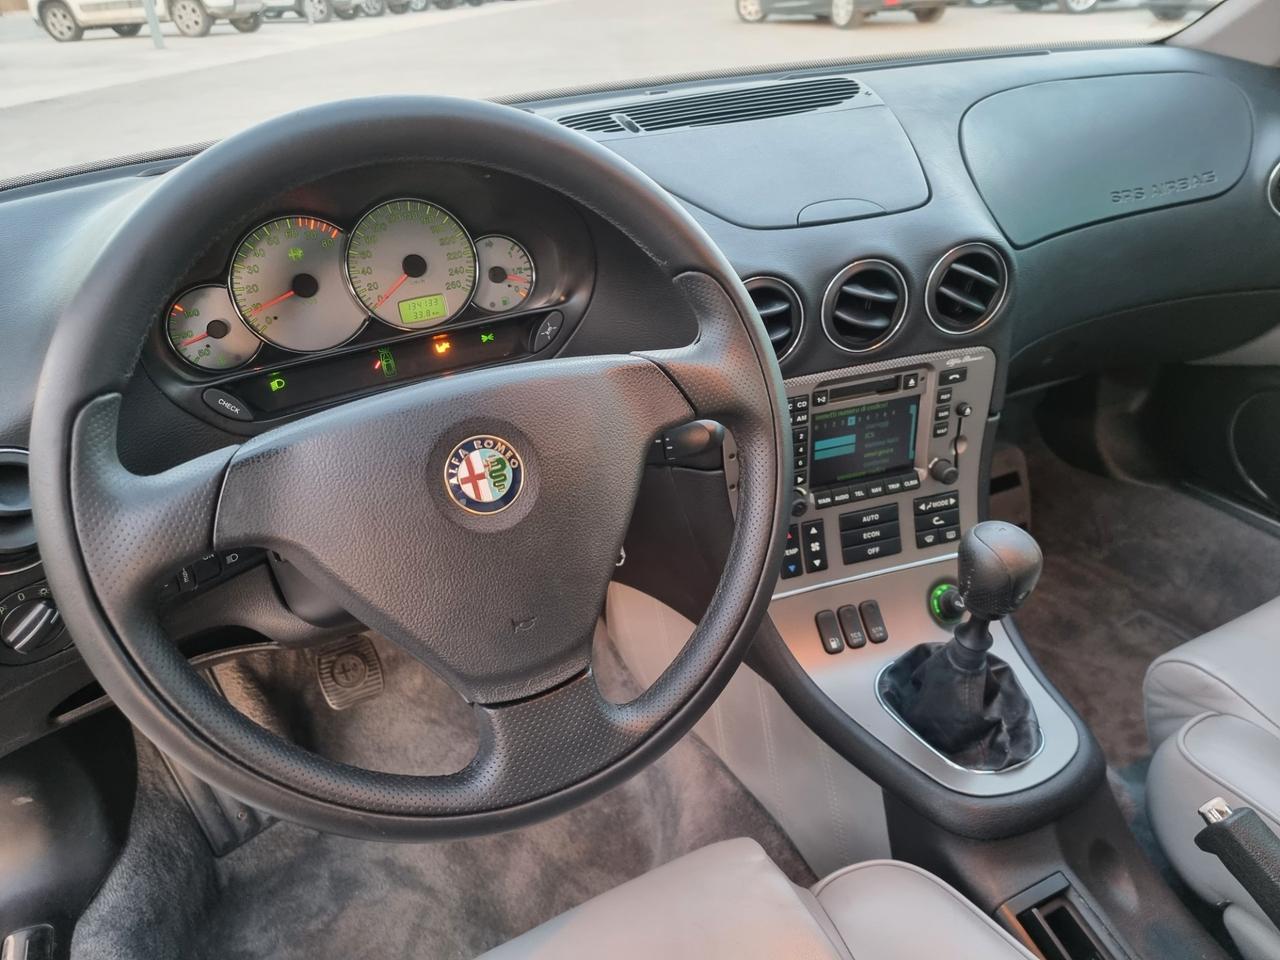 Alfa Romeo 166 2.0i V6 turbo cat Super